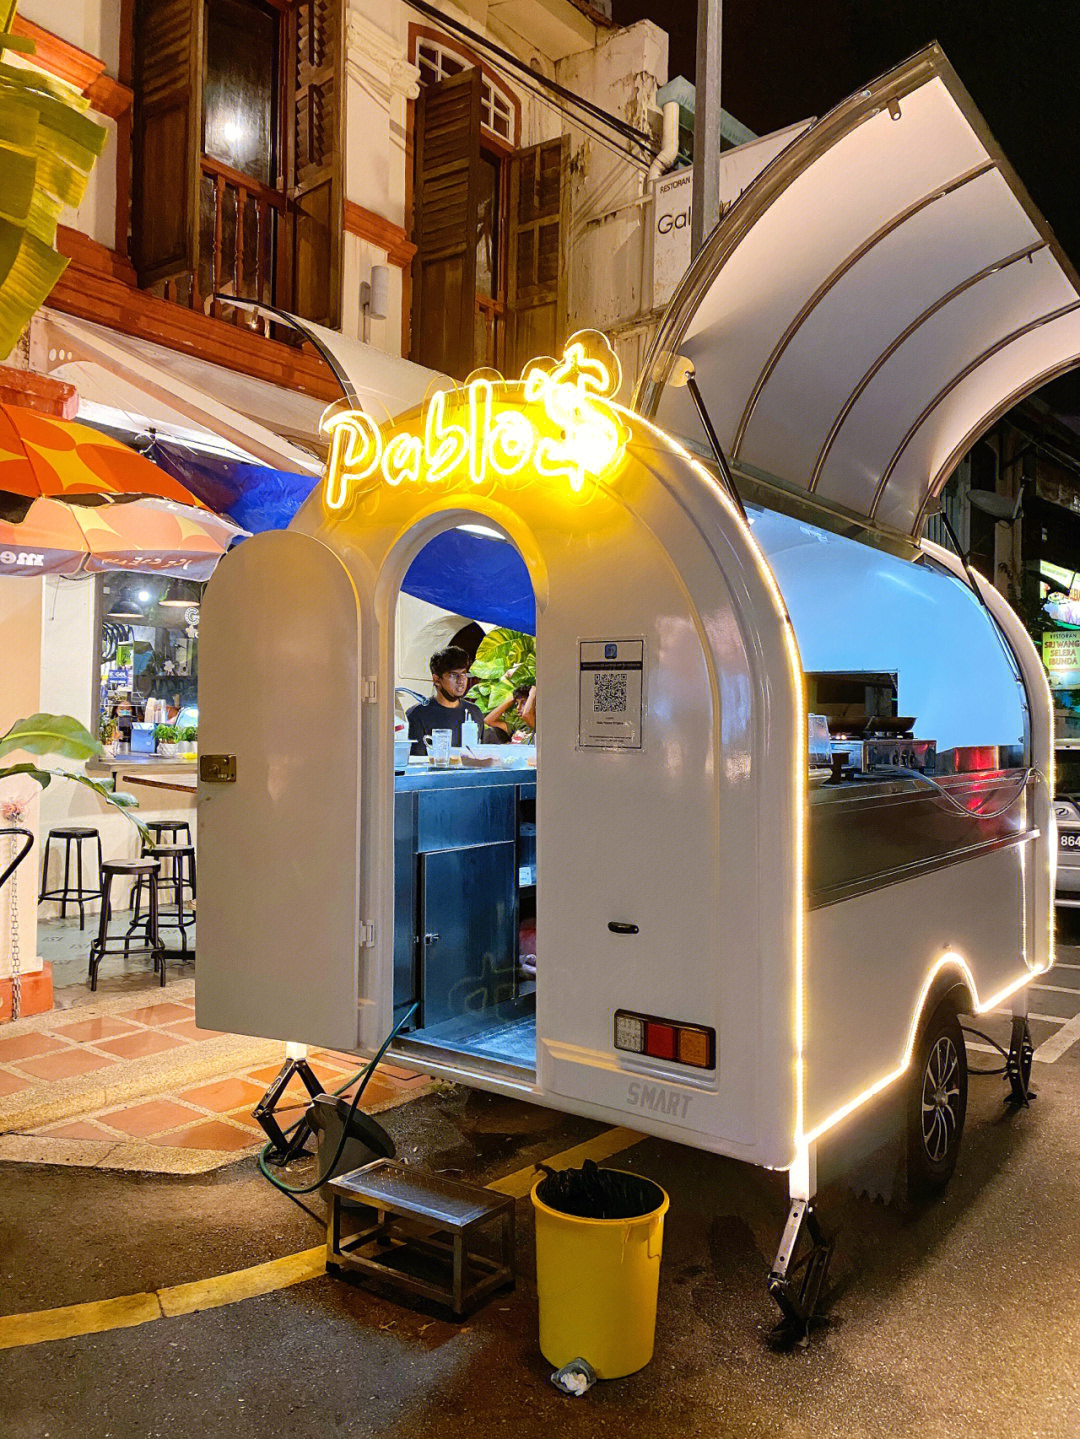 99pablo在槟城gala house外面的小餐车主打是意大利面和taco食物